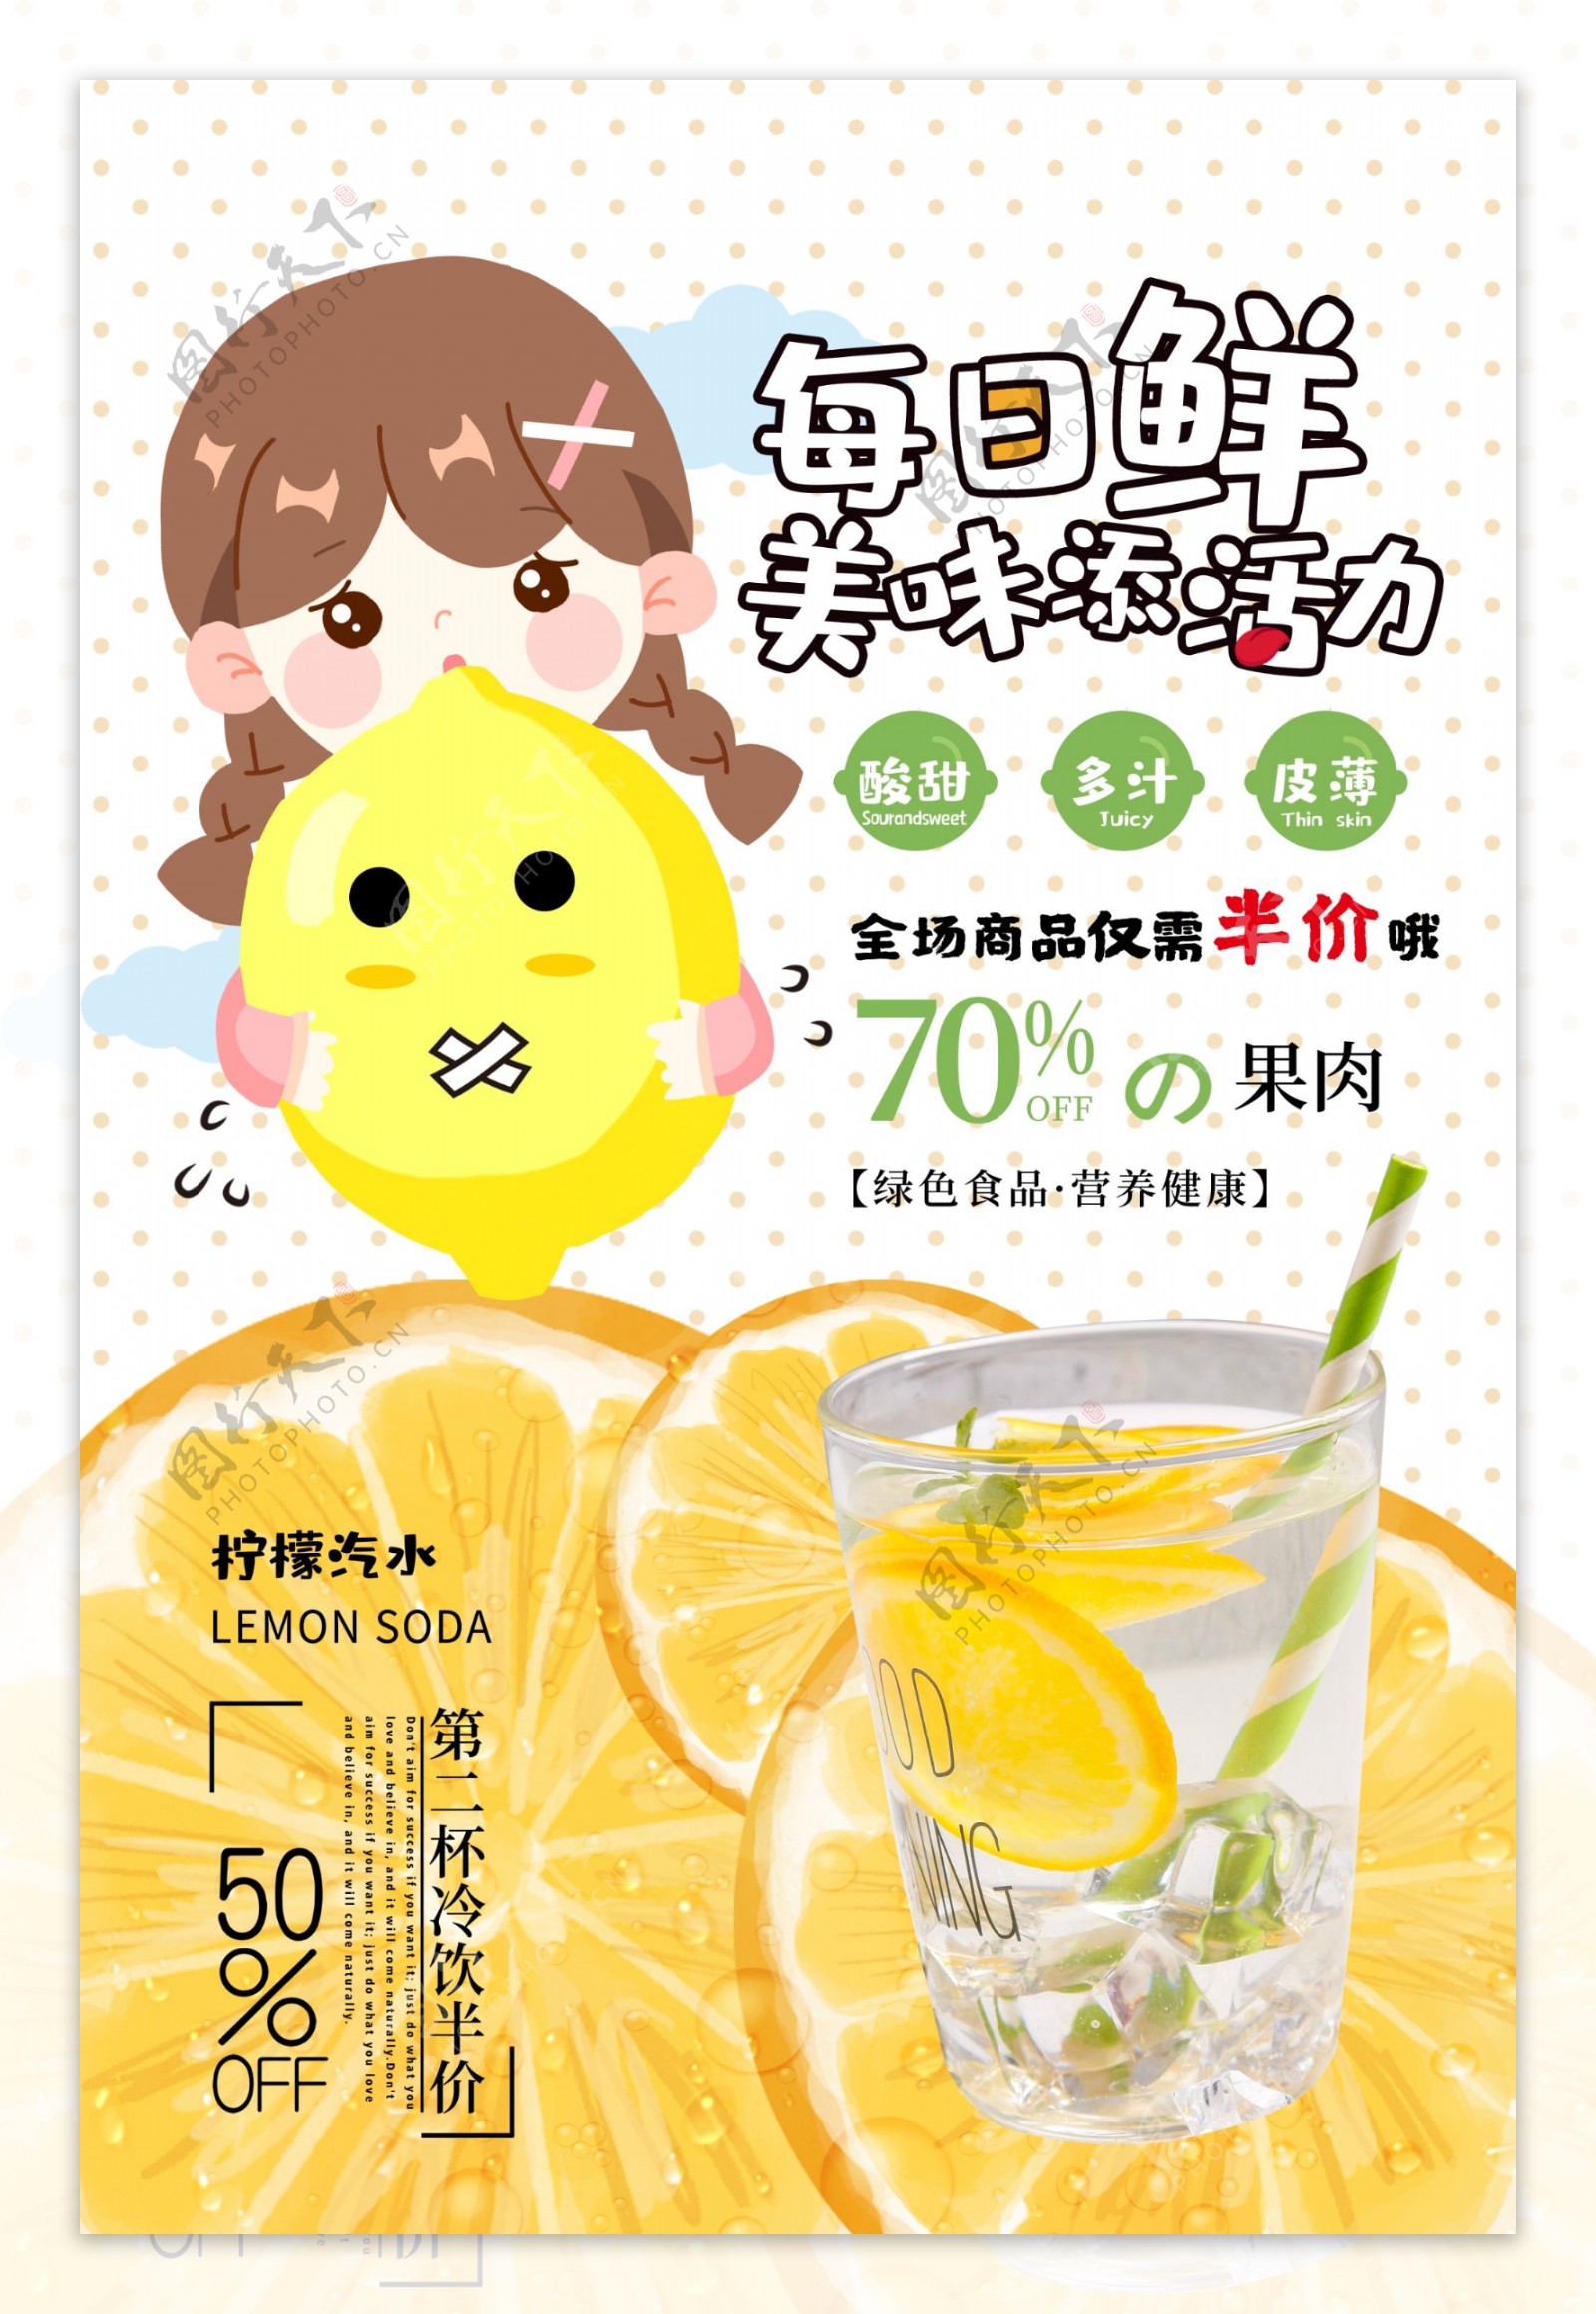 鲜榨果汁柠檬饮料海报